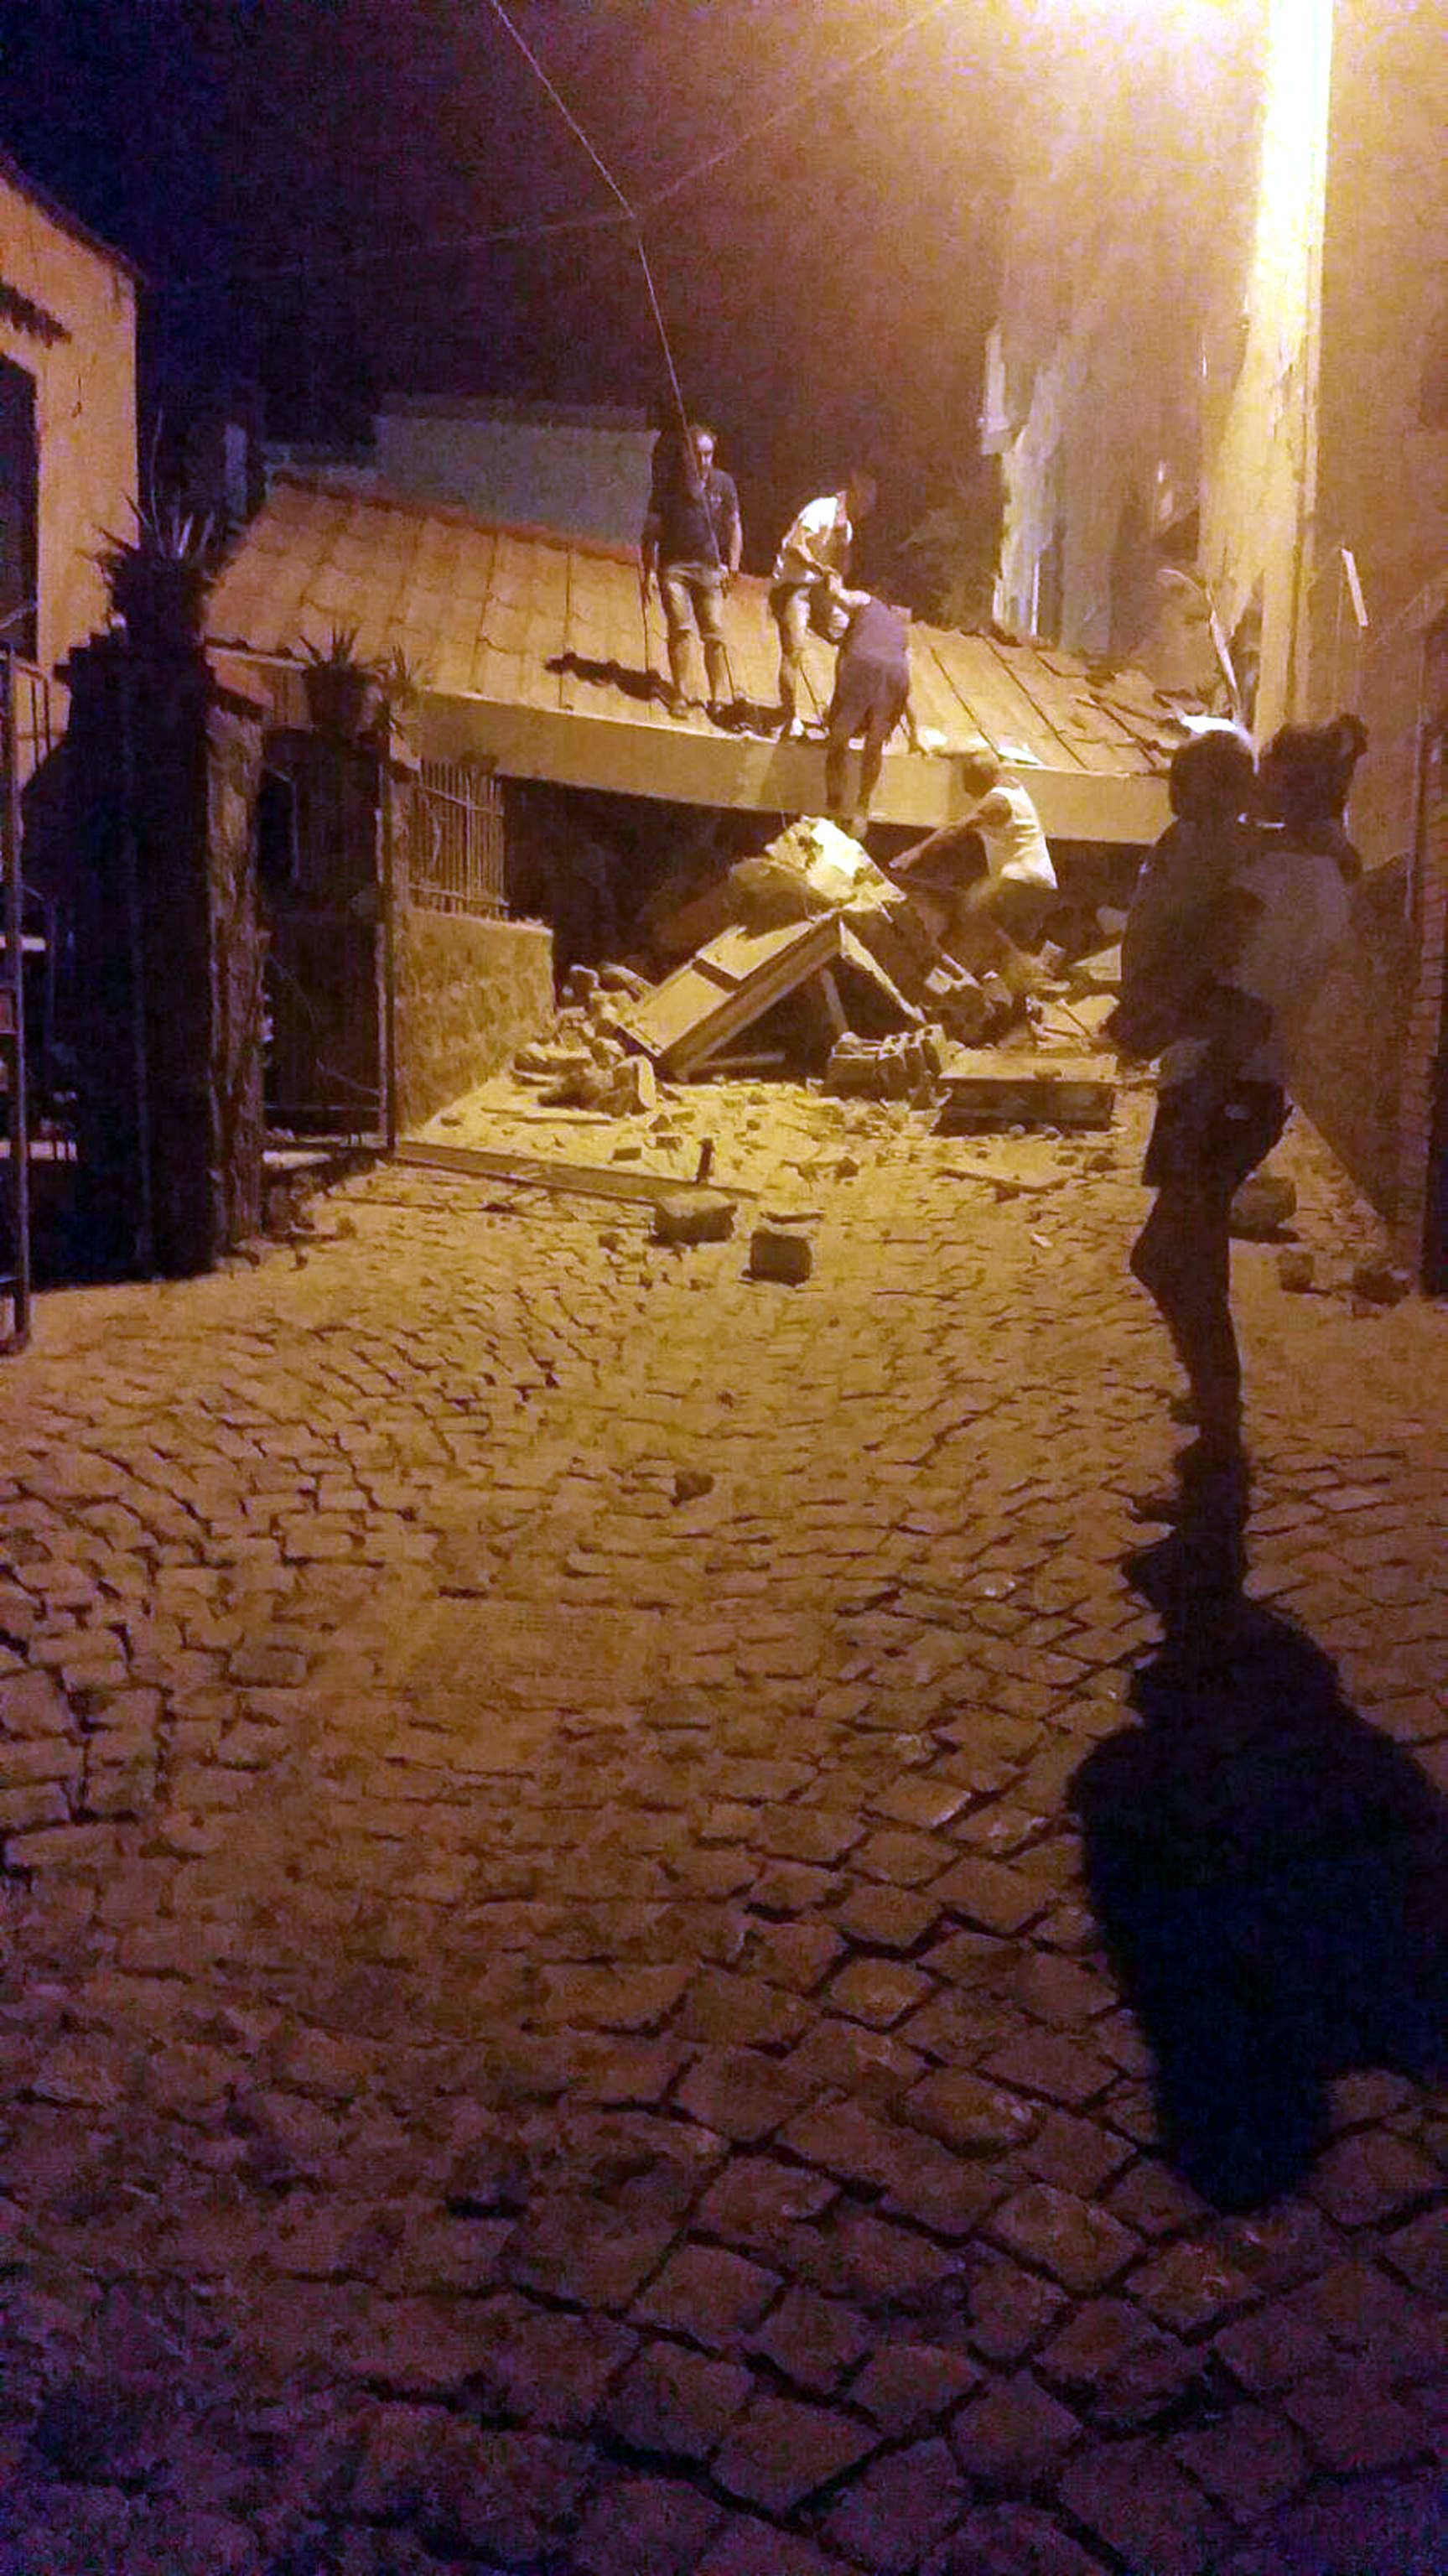 Земетресение на италианския остров Иския отне живота на поне двама души. Властите съобщават за 25 пострадали и разрушени сгради след труса с магнитуд 4,6 по Рихтер, разтърсил острова в понеделник вечерта.